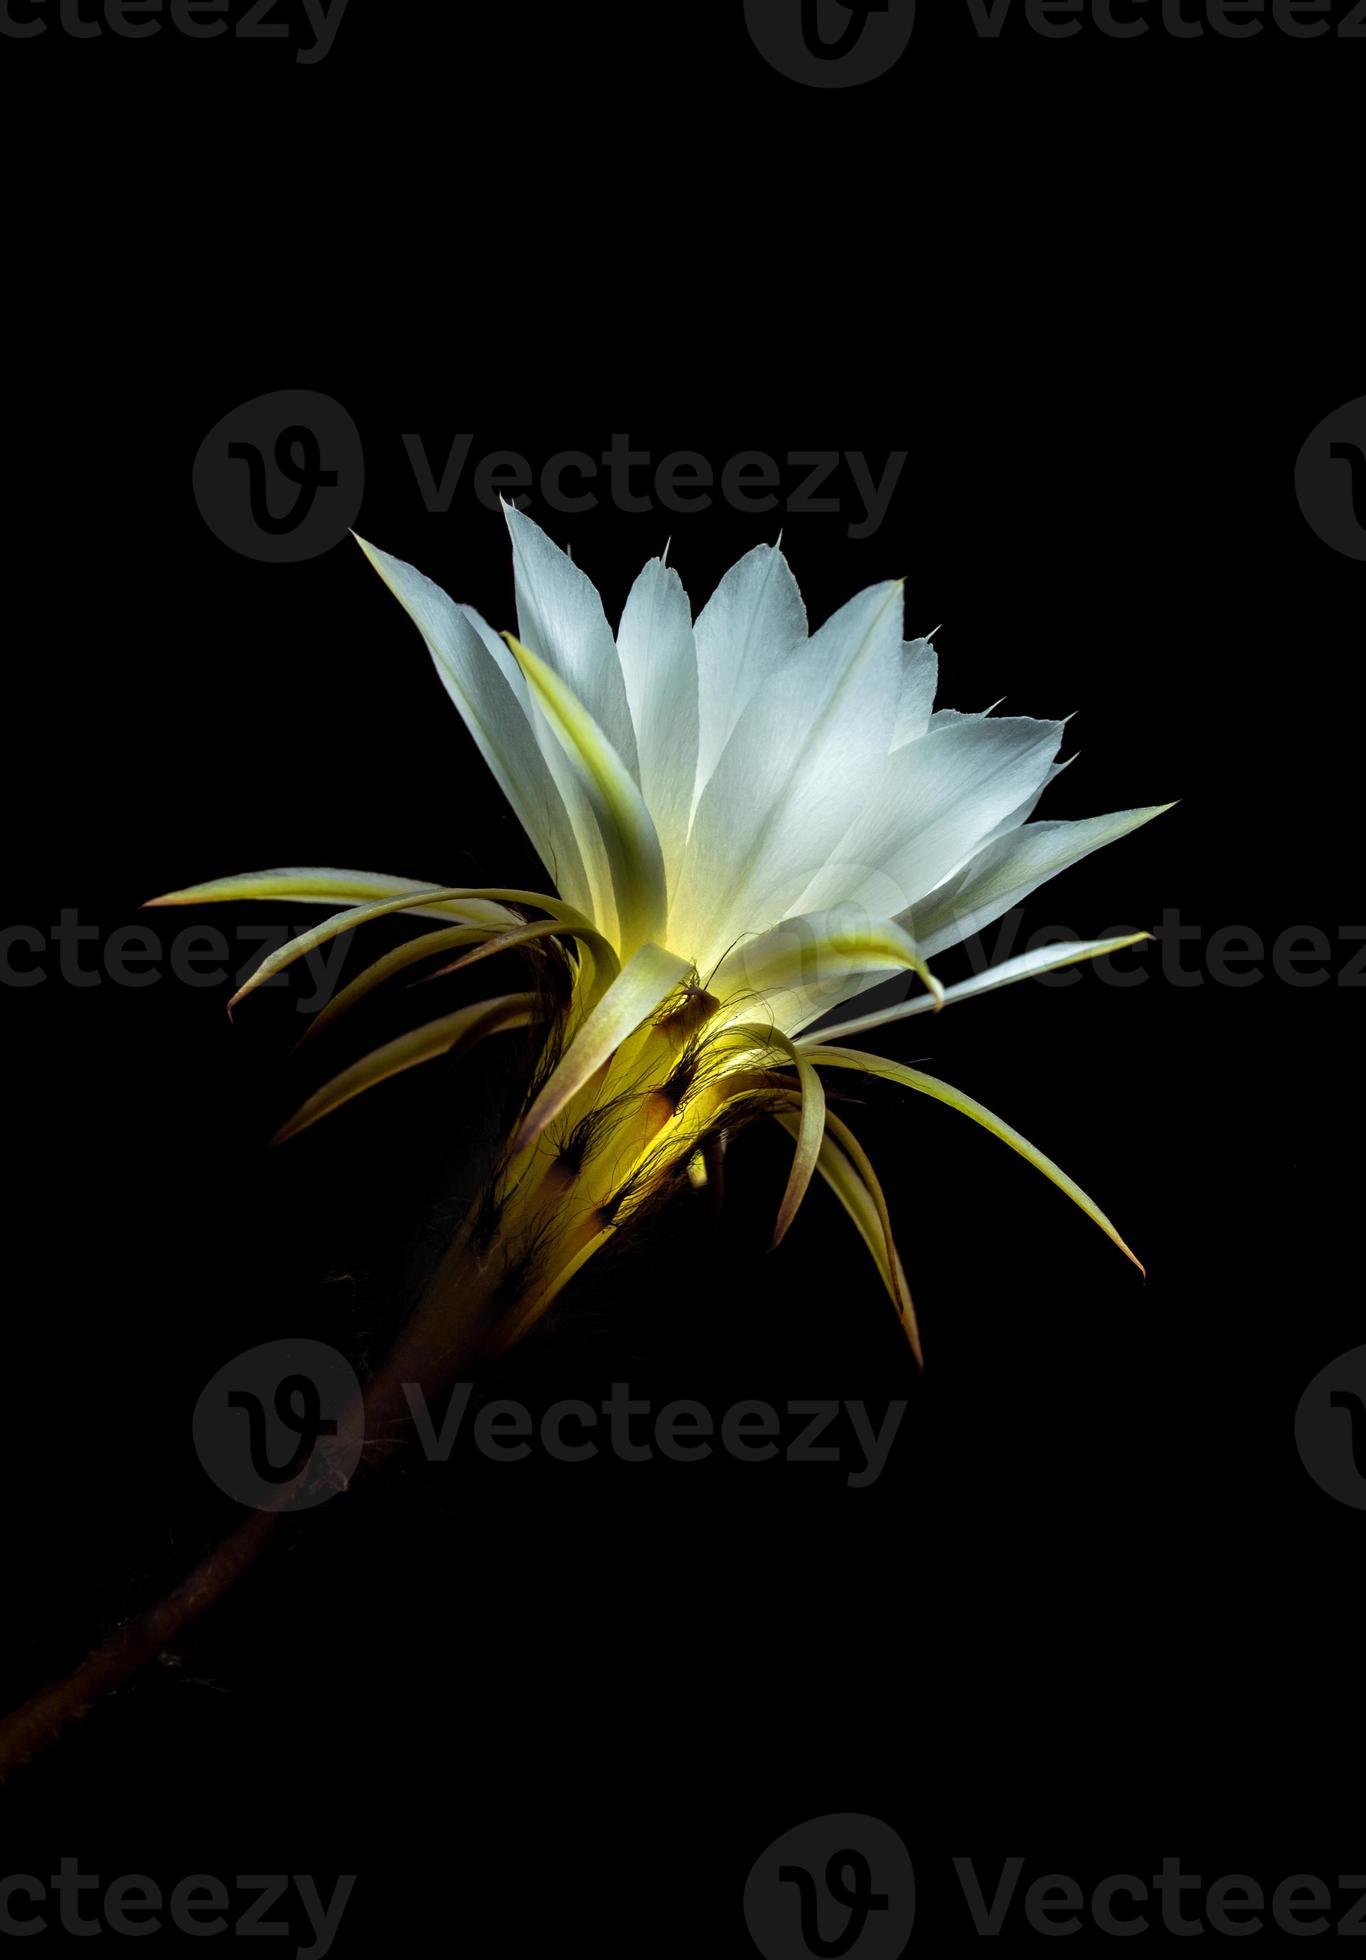 couleur blanche avec duveteux de fleur de cactus sur fond noir 3397558  Banque de photos